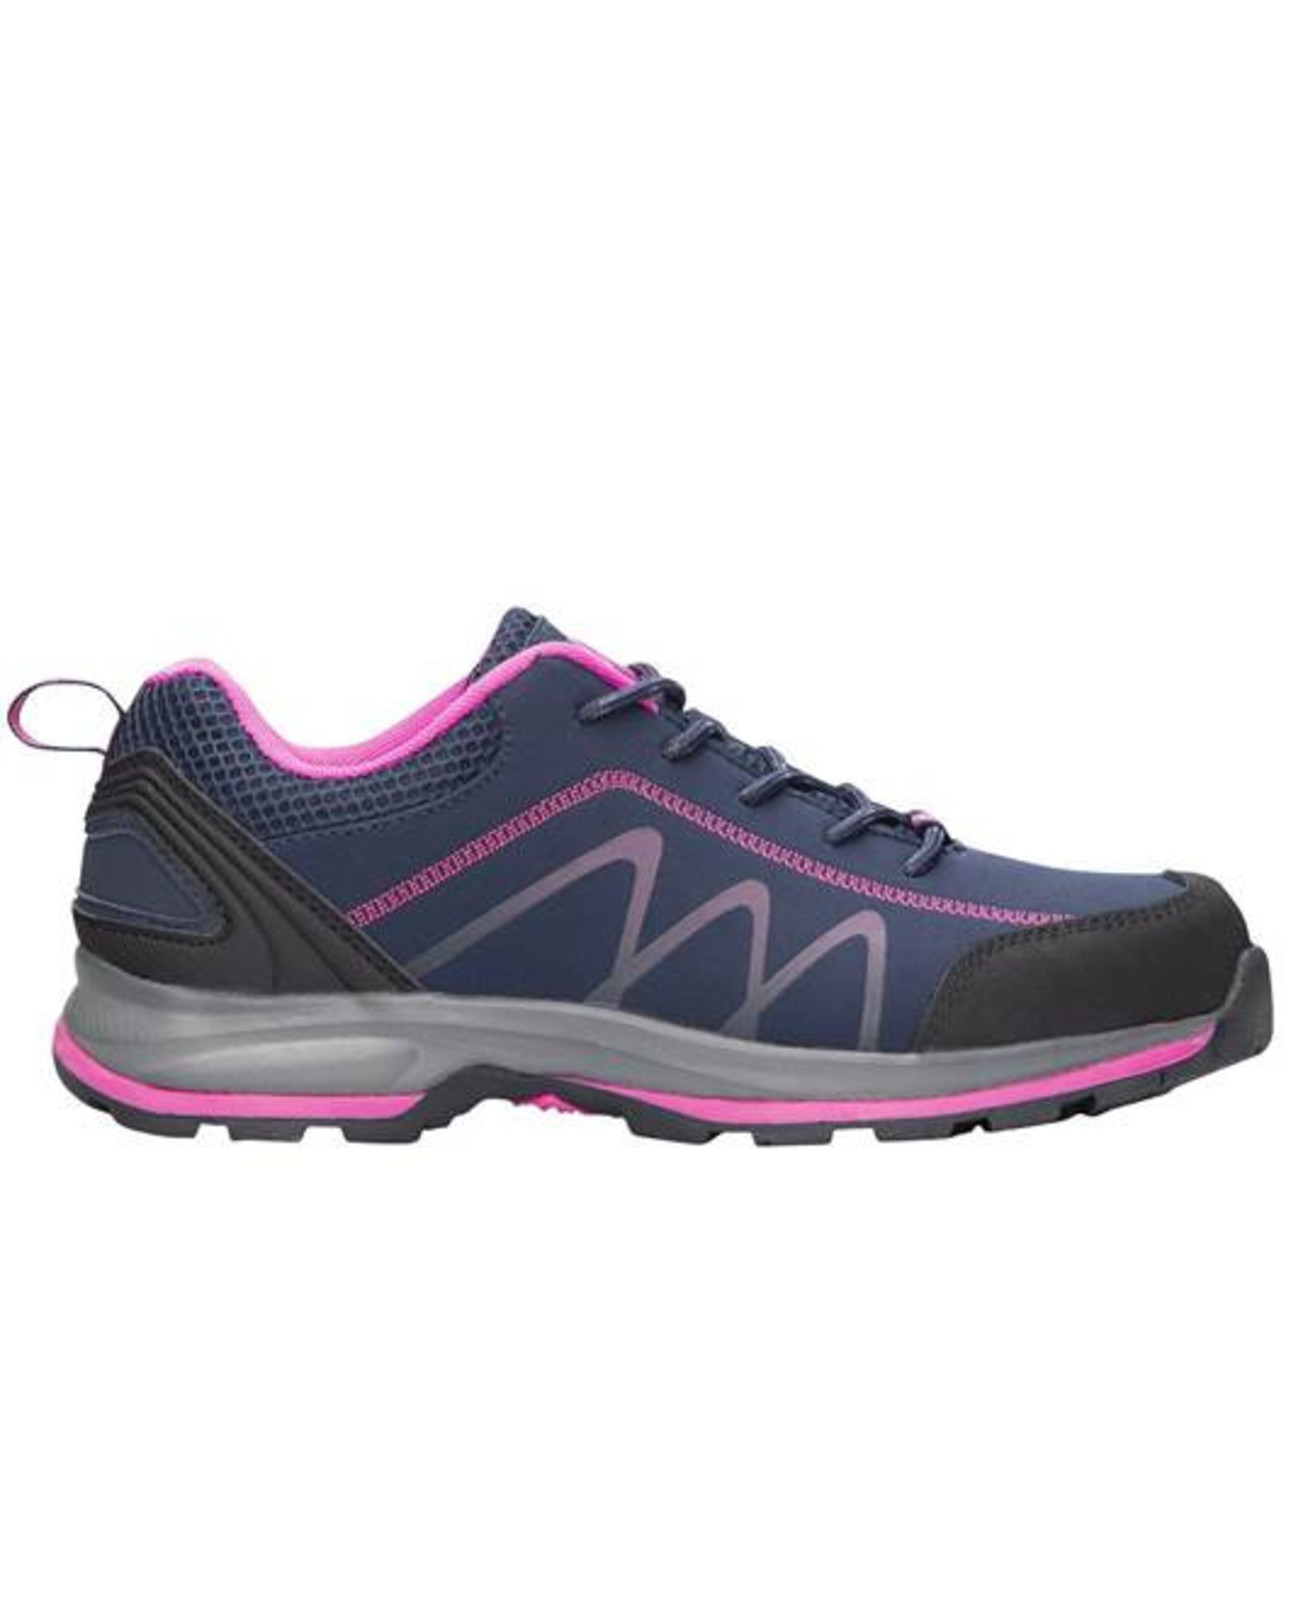 Dámska outdoor softshellová obuv Ardon Bloom - veľkosť: 36, farba: navy lila